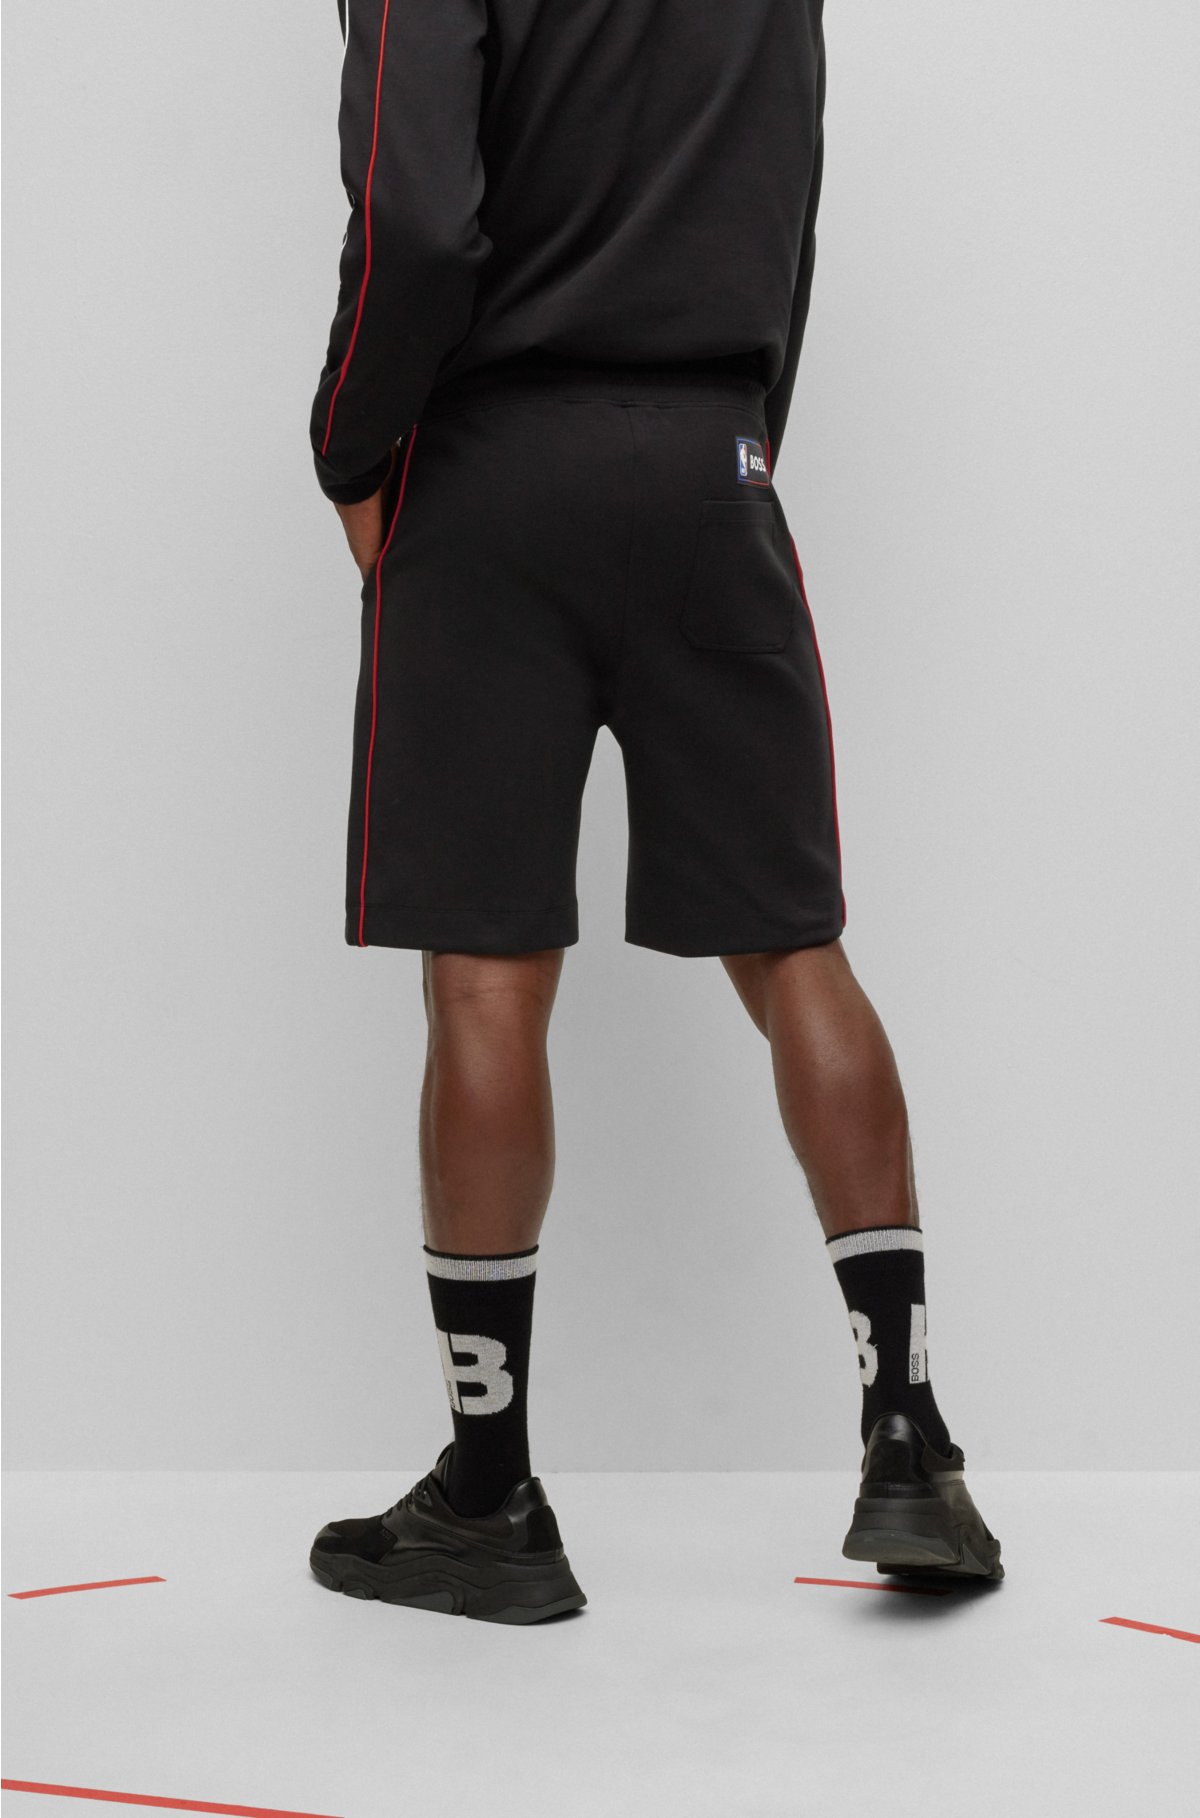 NBA Jersey Shorts Red/Black (Lakers, Jordan, Bulls)